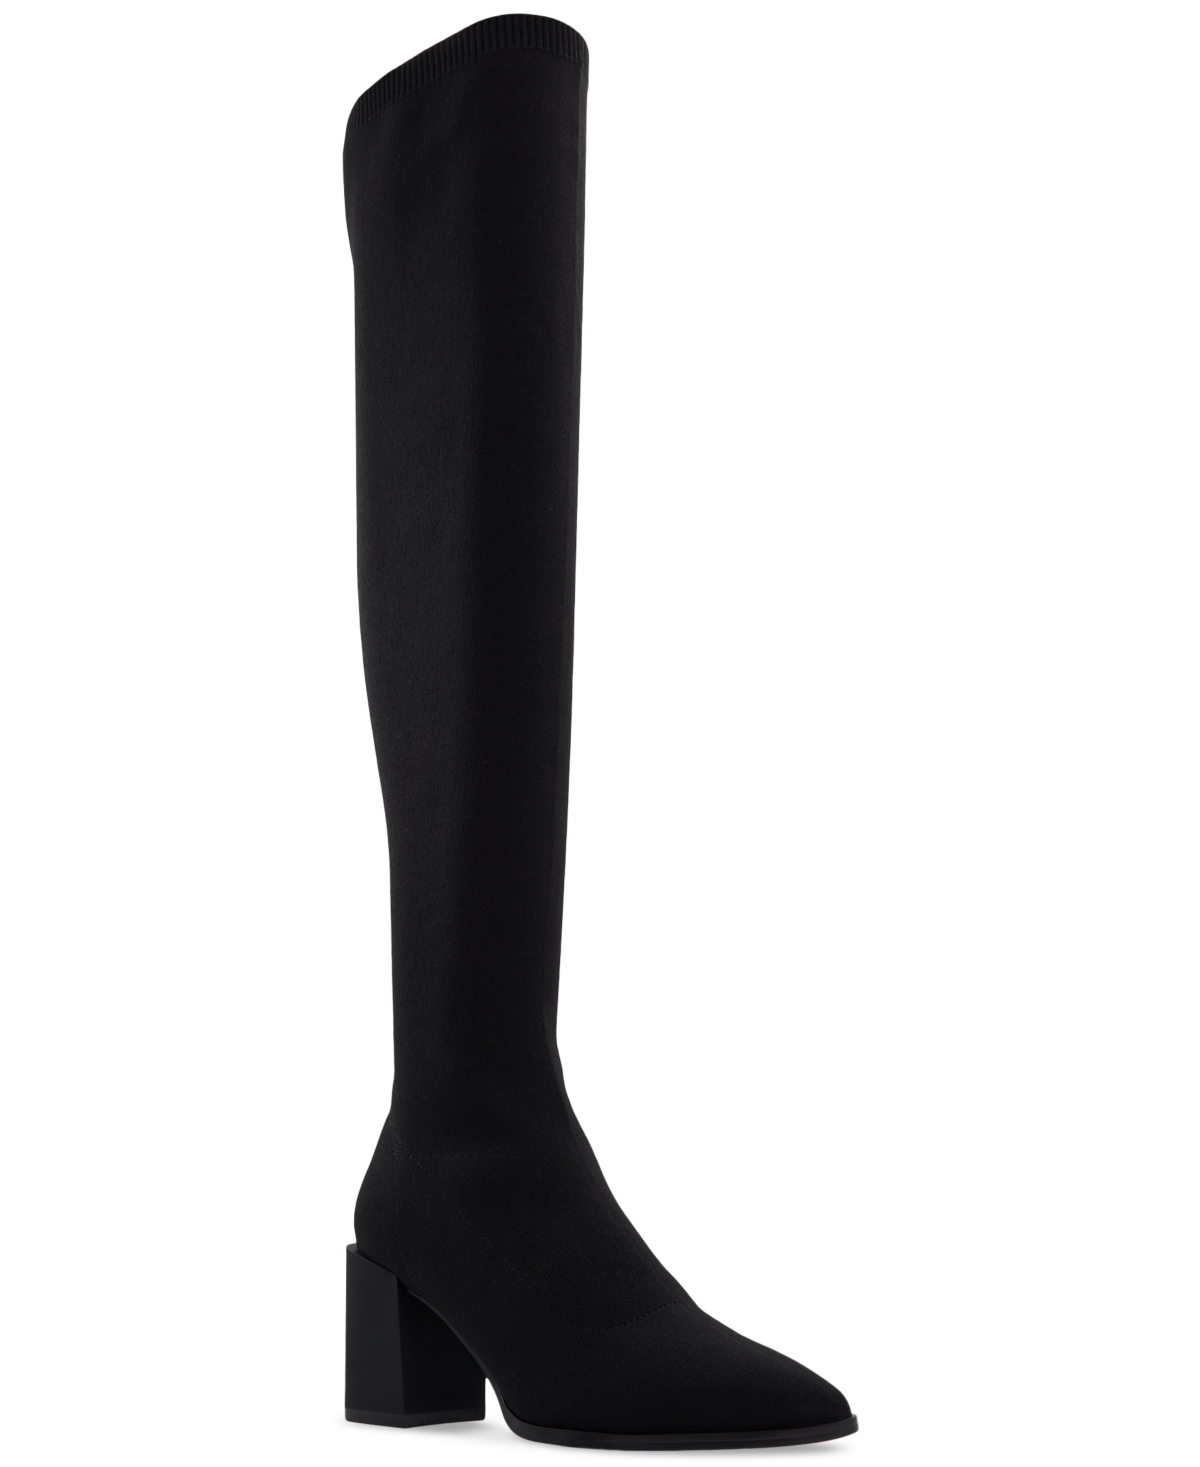 Women's Joann Over-The-Knee Block-Heel Boots - Black